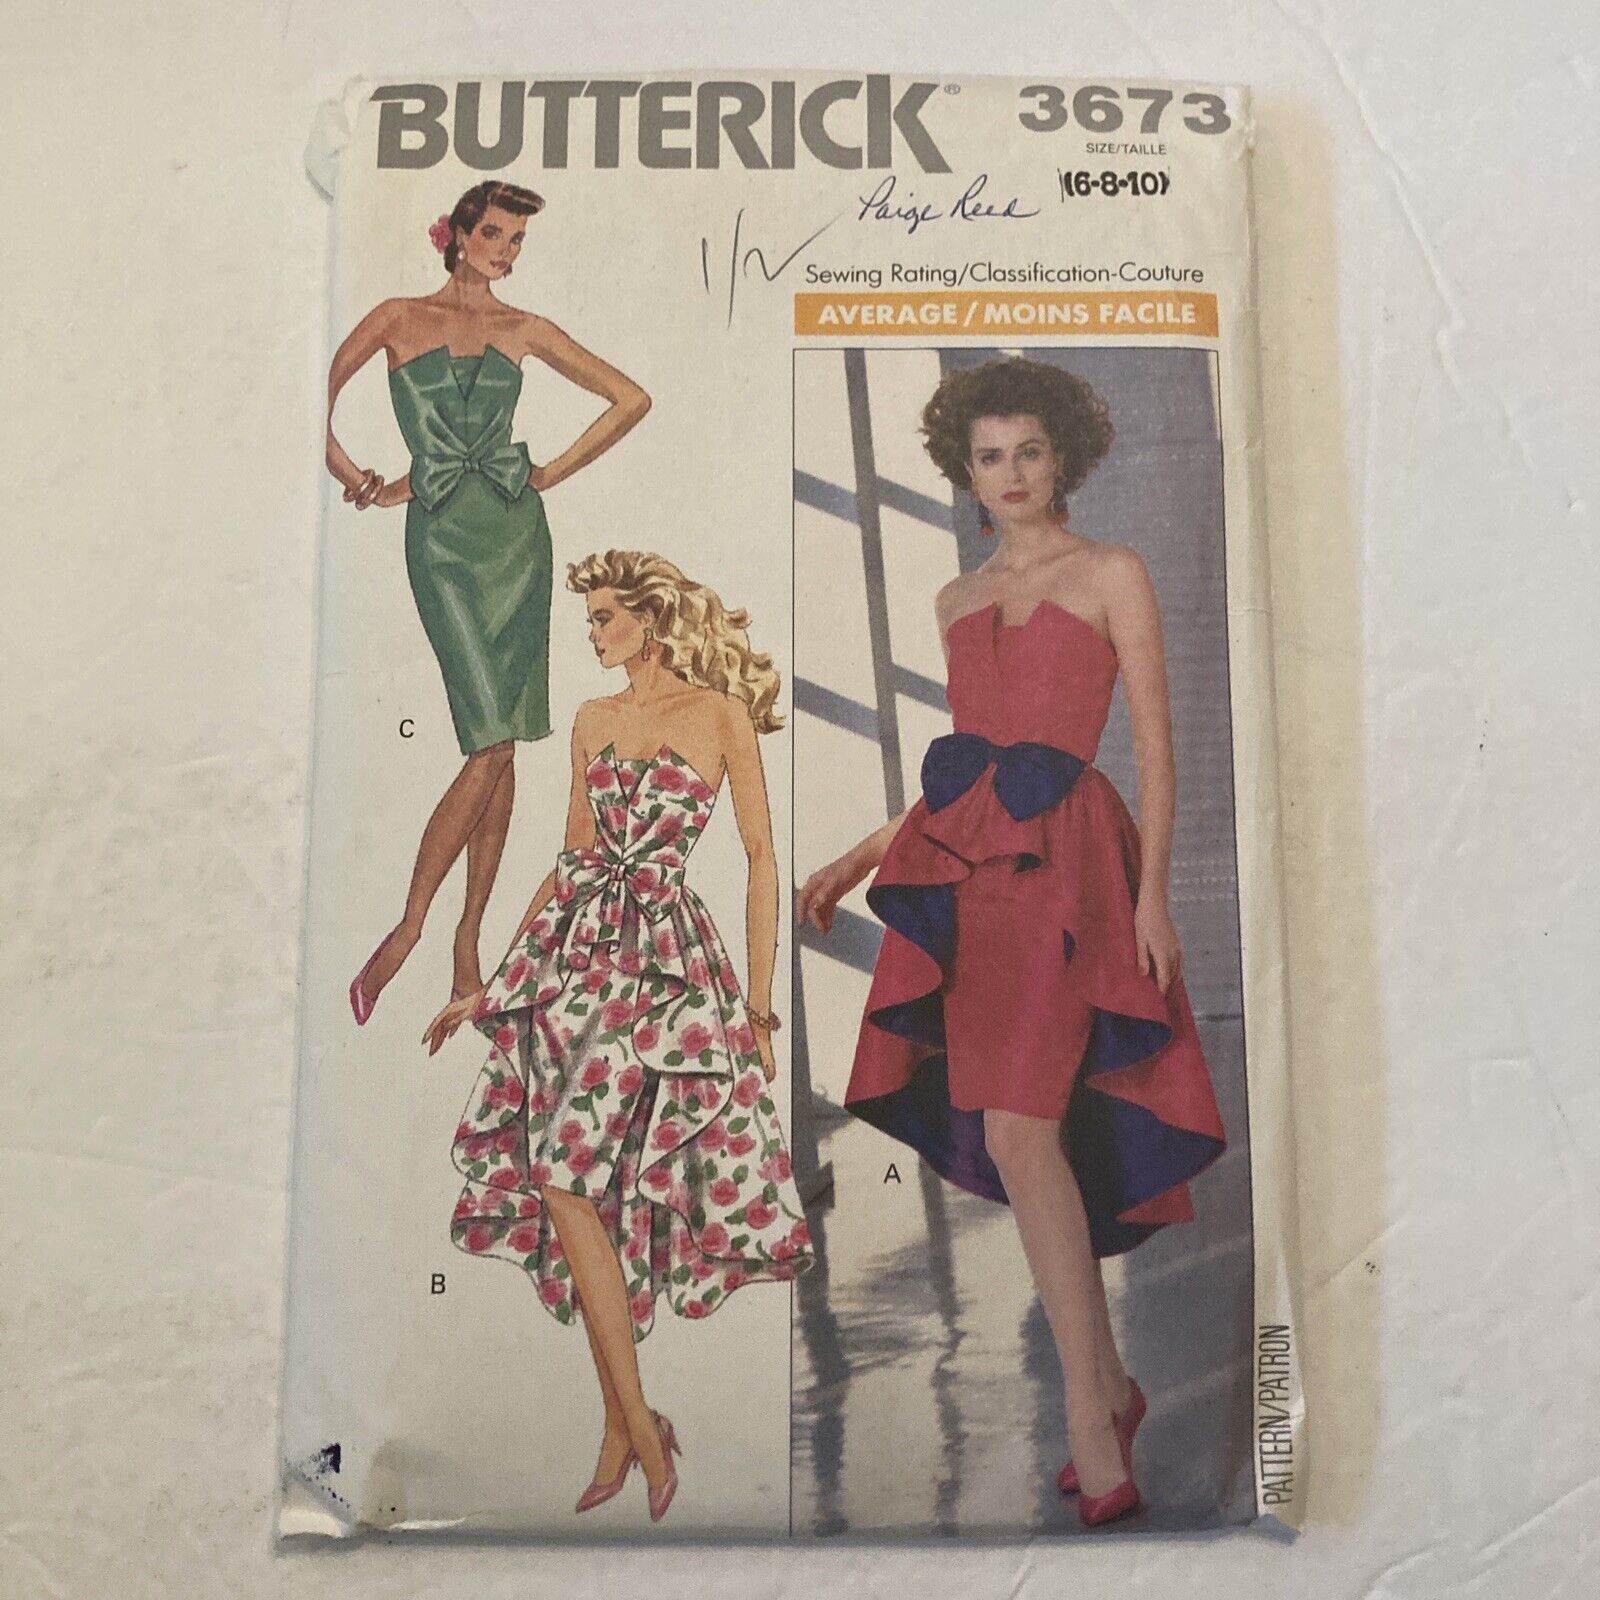 Vintage 1989 Butterick Evening Dress Top/Skirt/Pattern 3673 Size 6 8 10 Cut